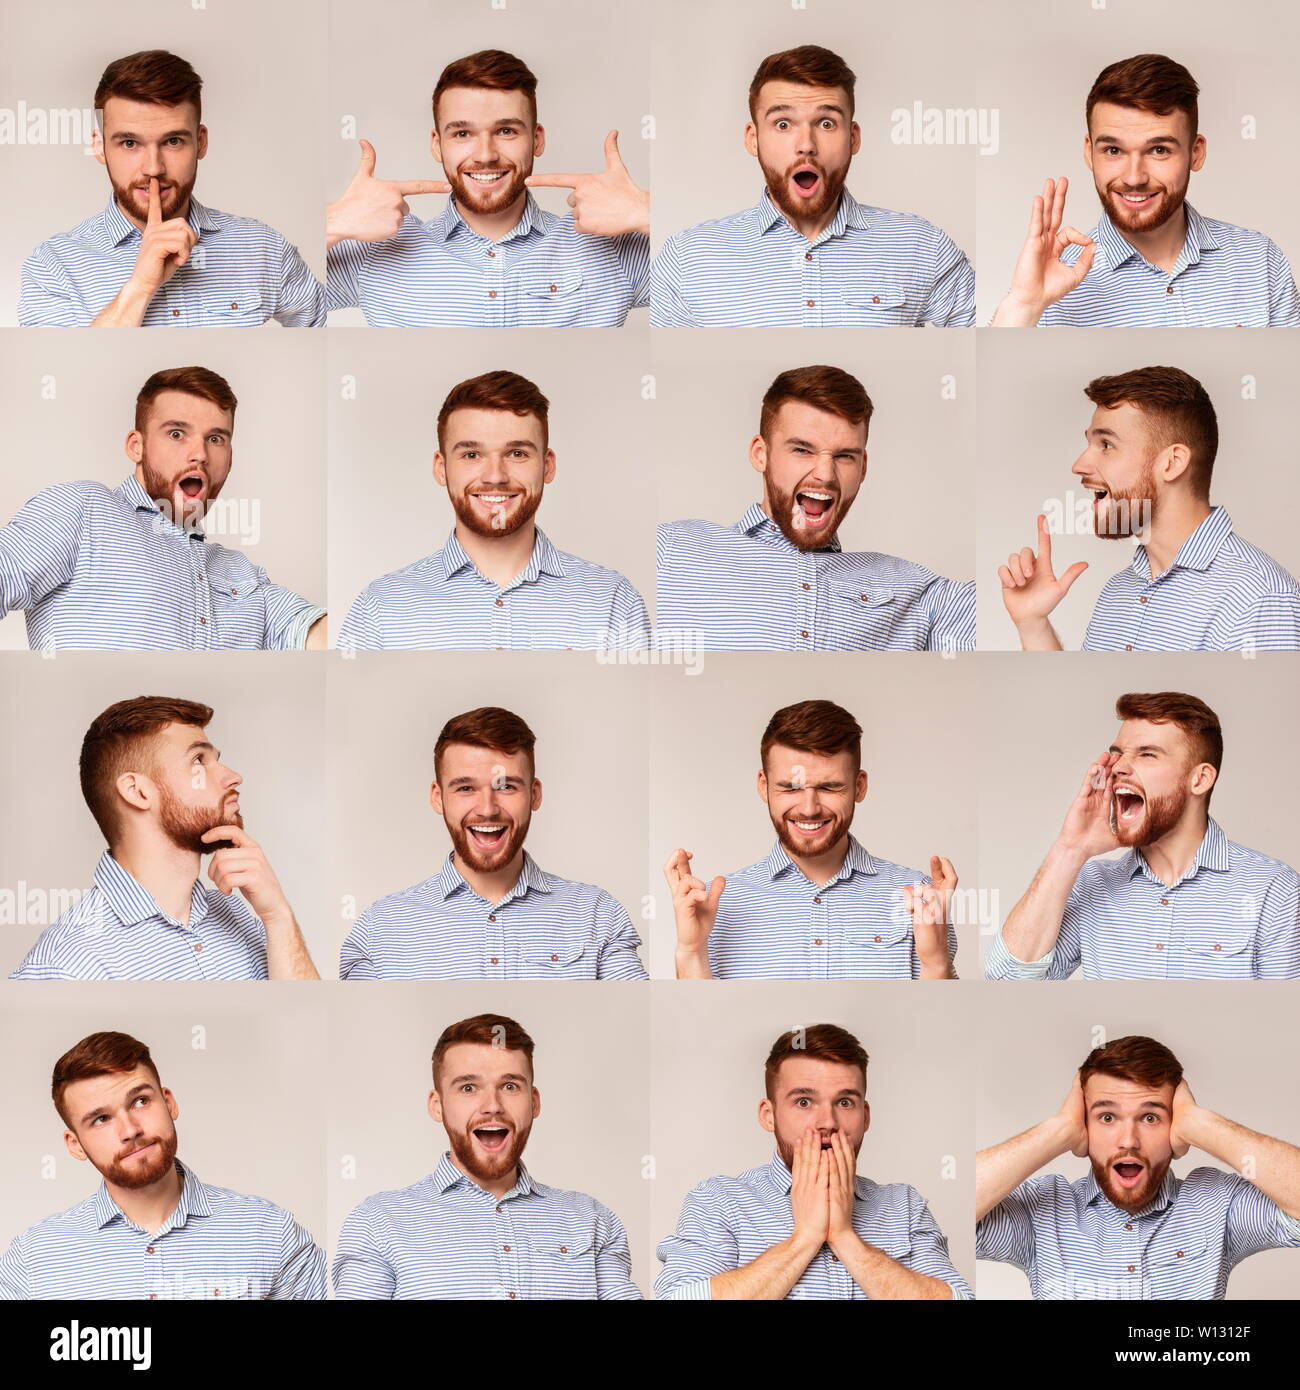 Collage von jungen Kerl Porträts mit unterschiedlichen emotins Stockfoto